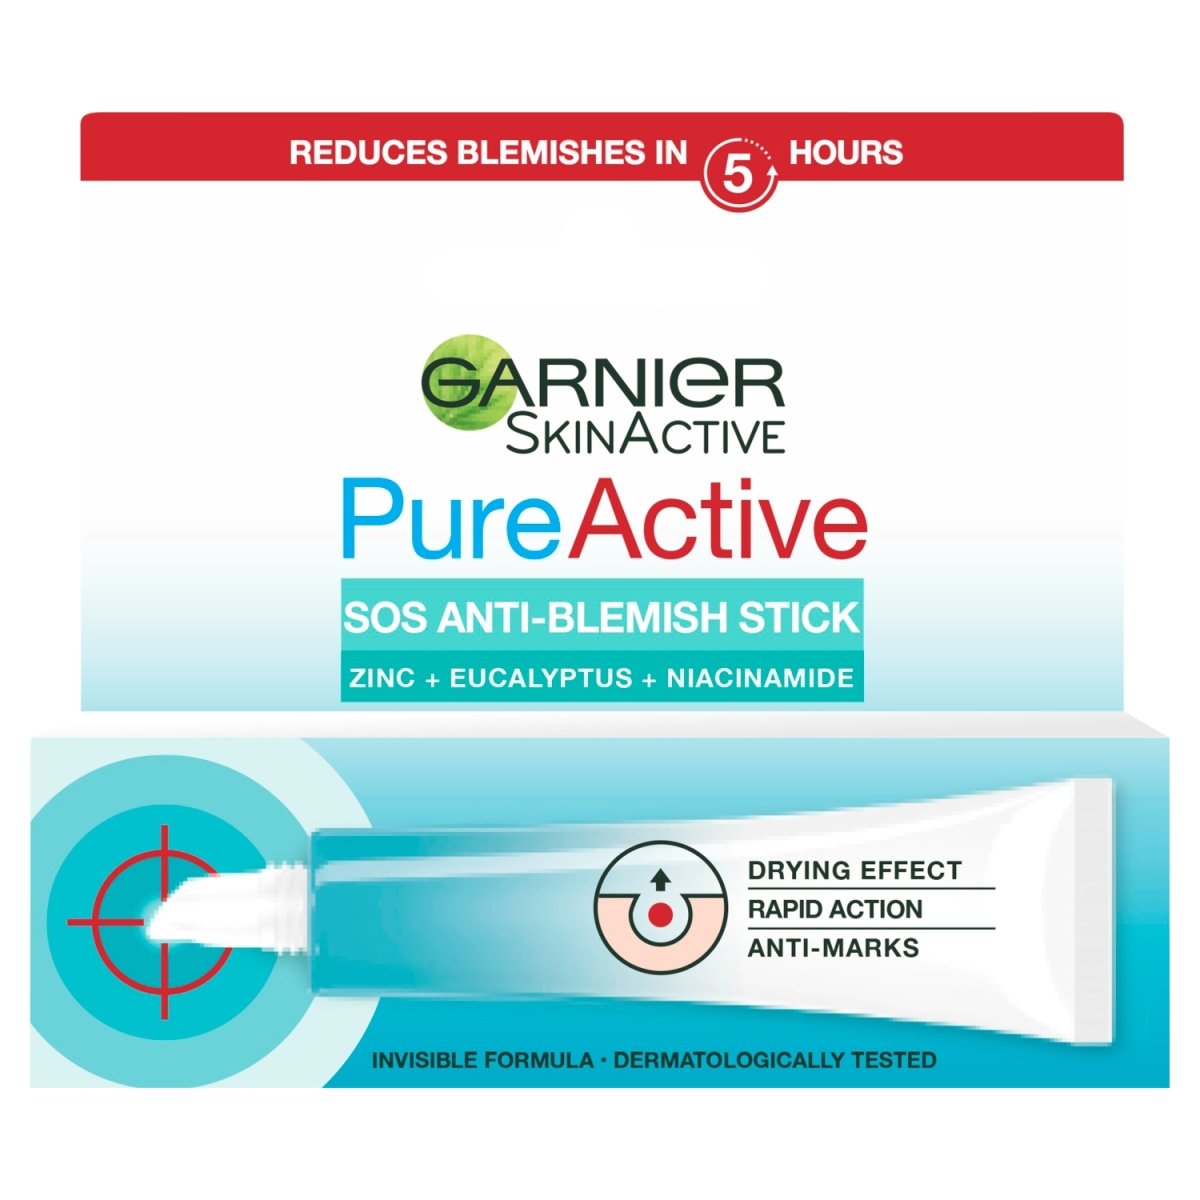 Garnier Pure Active SOS Anti-Blemish Stick - Intamarque 3600542382625